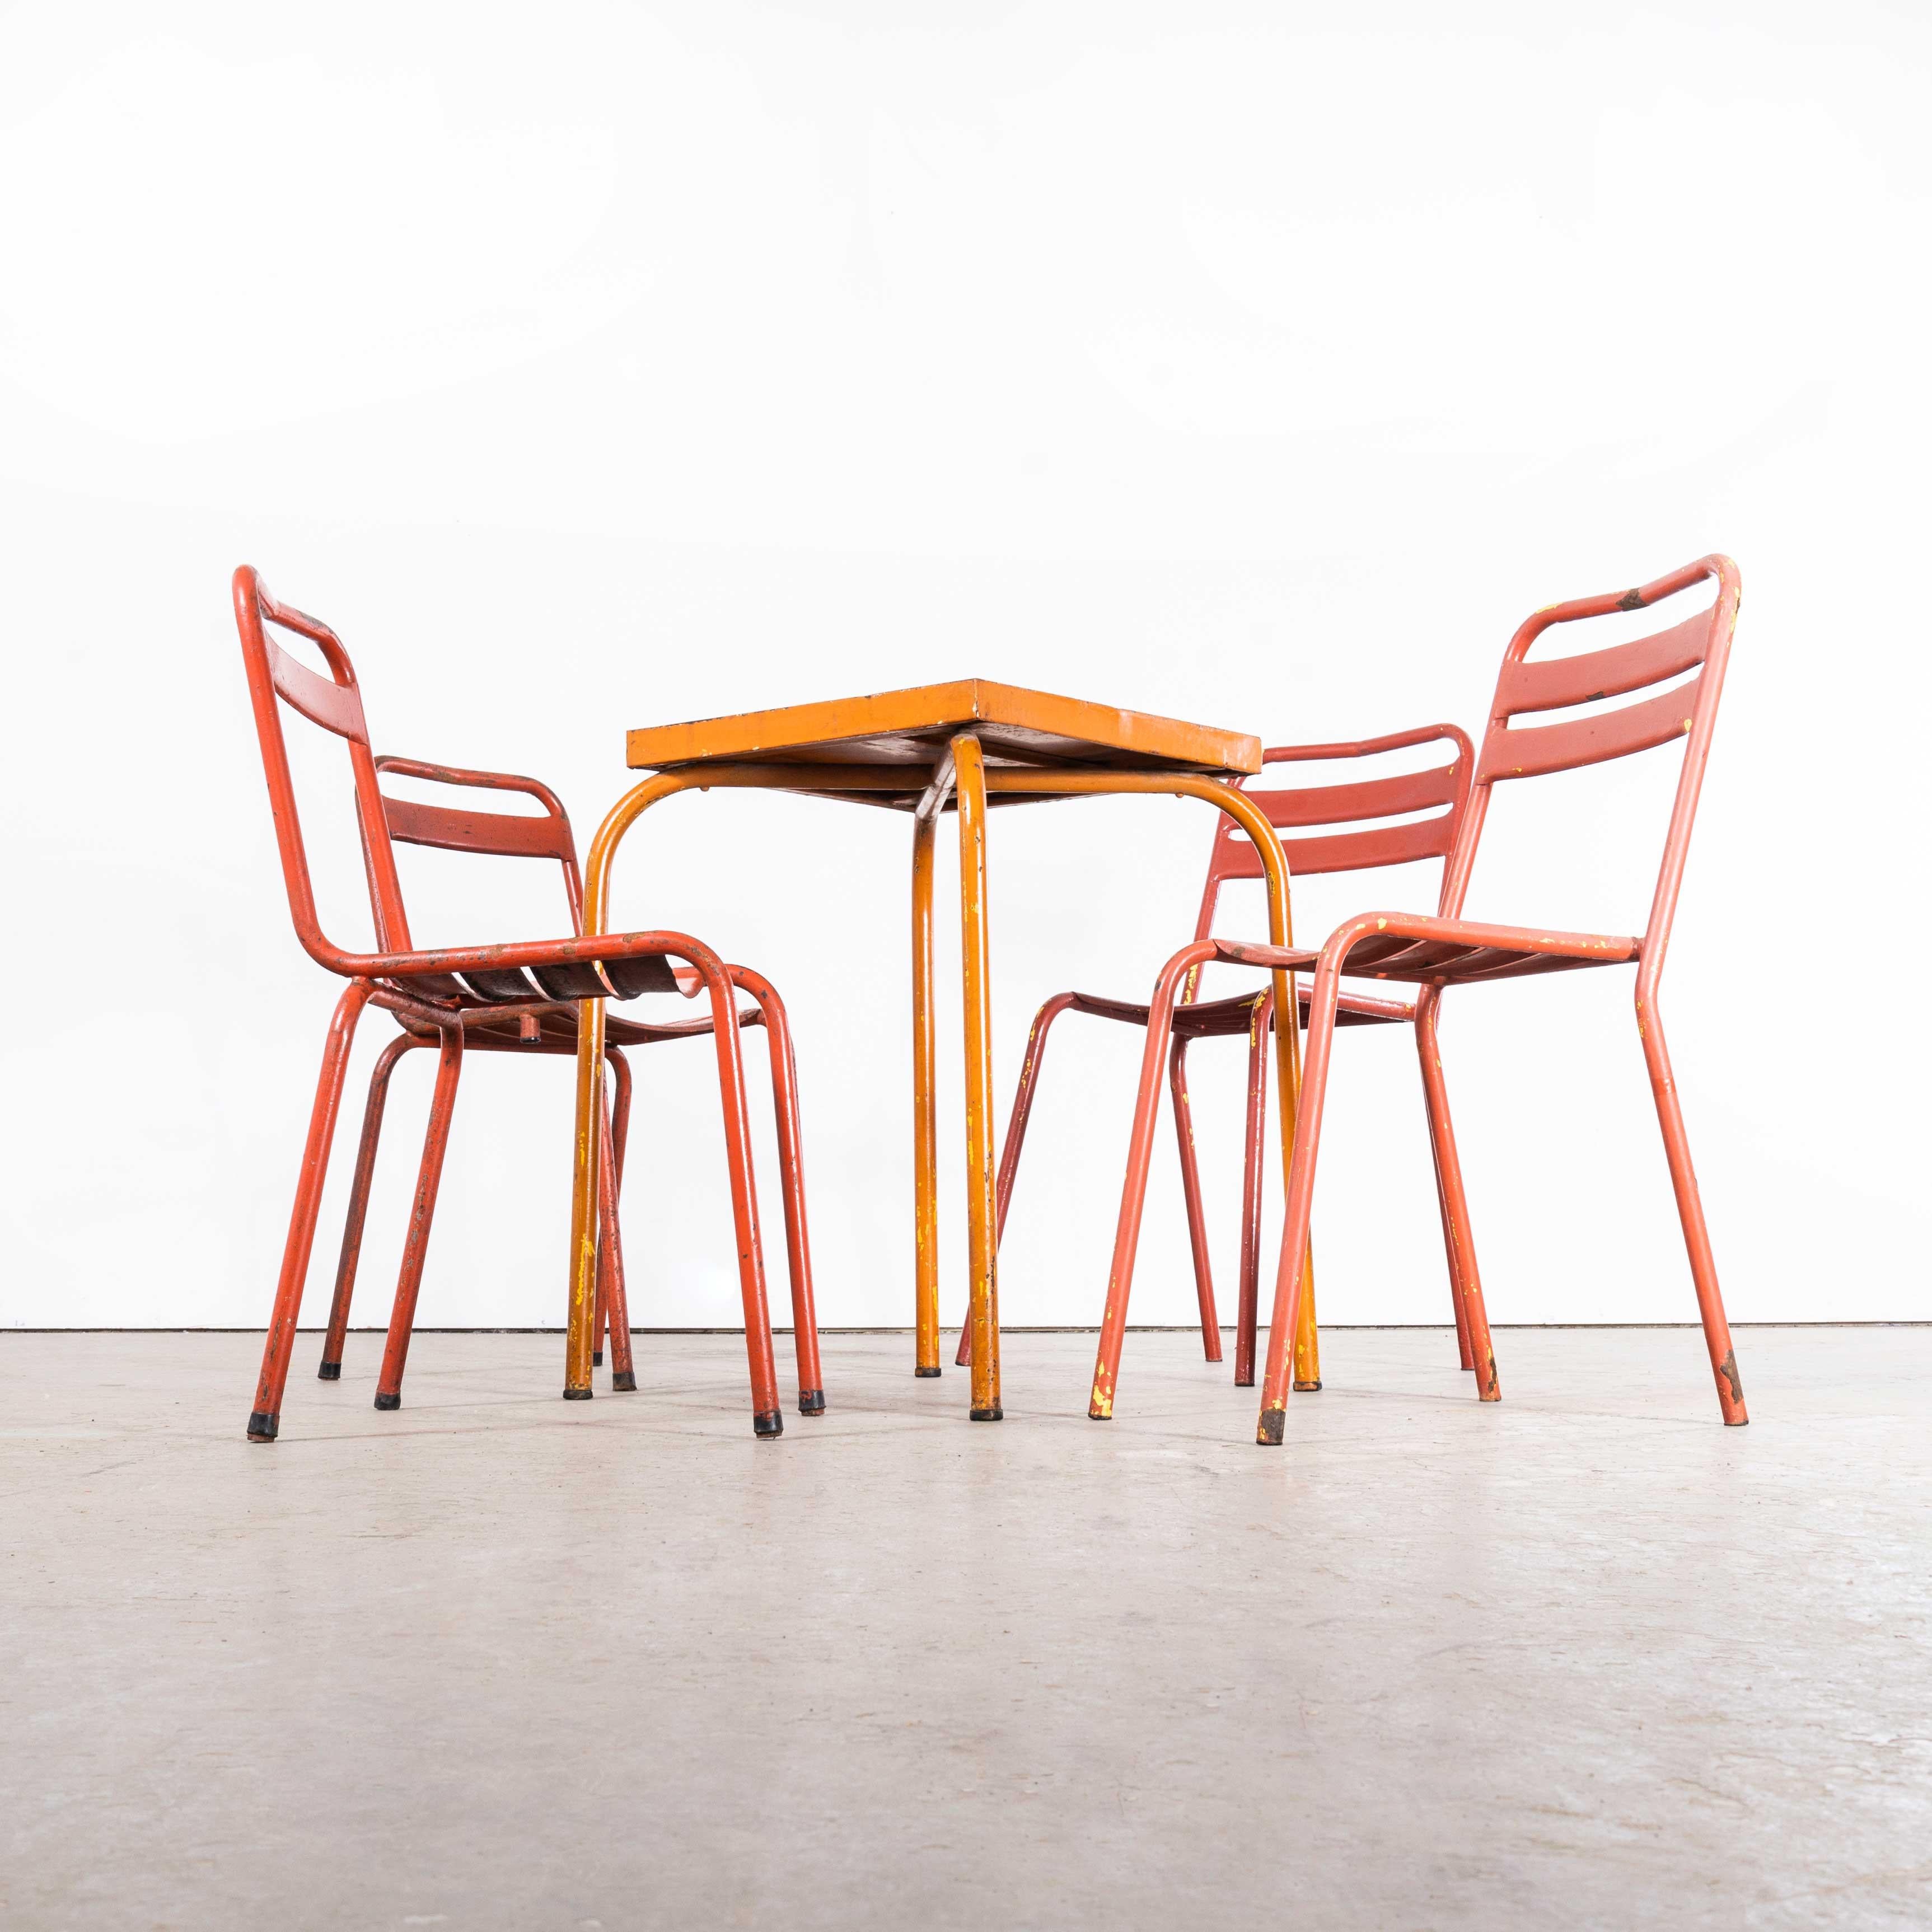 Ensemble table et chaise d'extérieur français original des années 1950 - quatre chaises (2623)
Ensemble table et chaise d'extérieur français original des années 1950 - quatre chaises. Cette offre concerne une table en métal et quatre chaises de